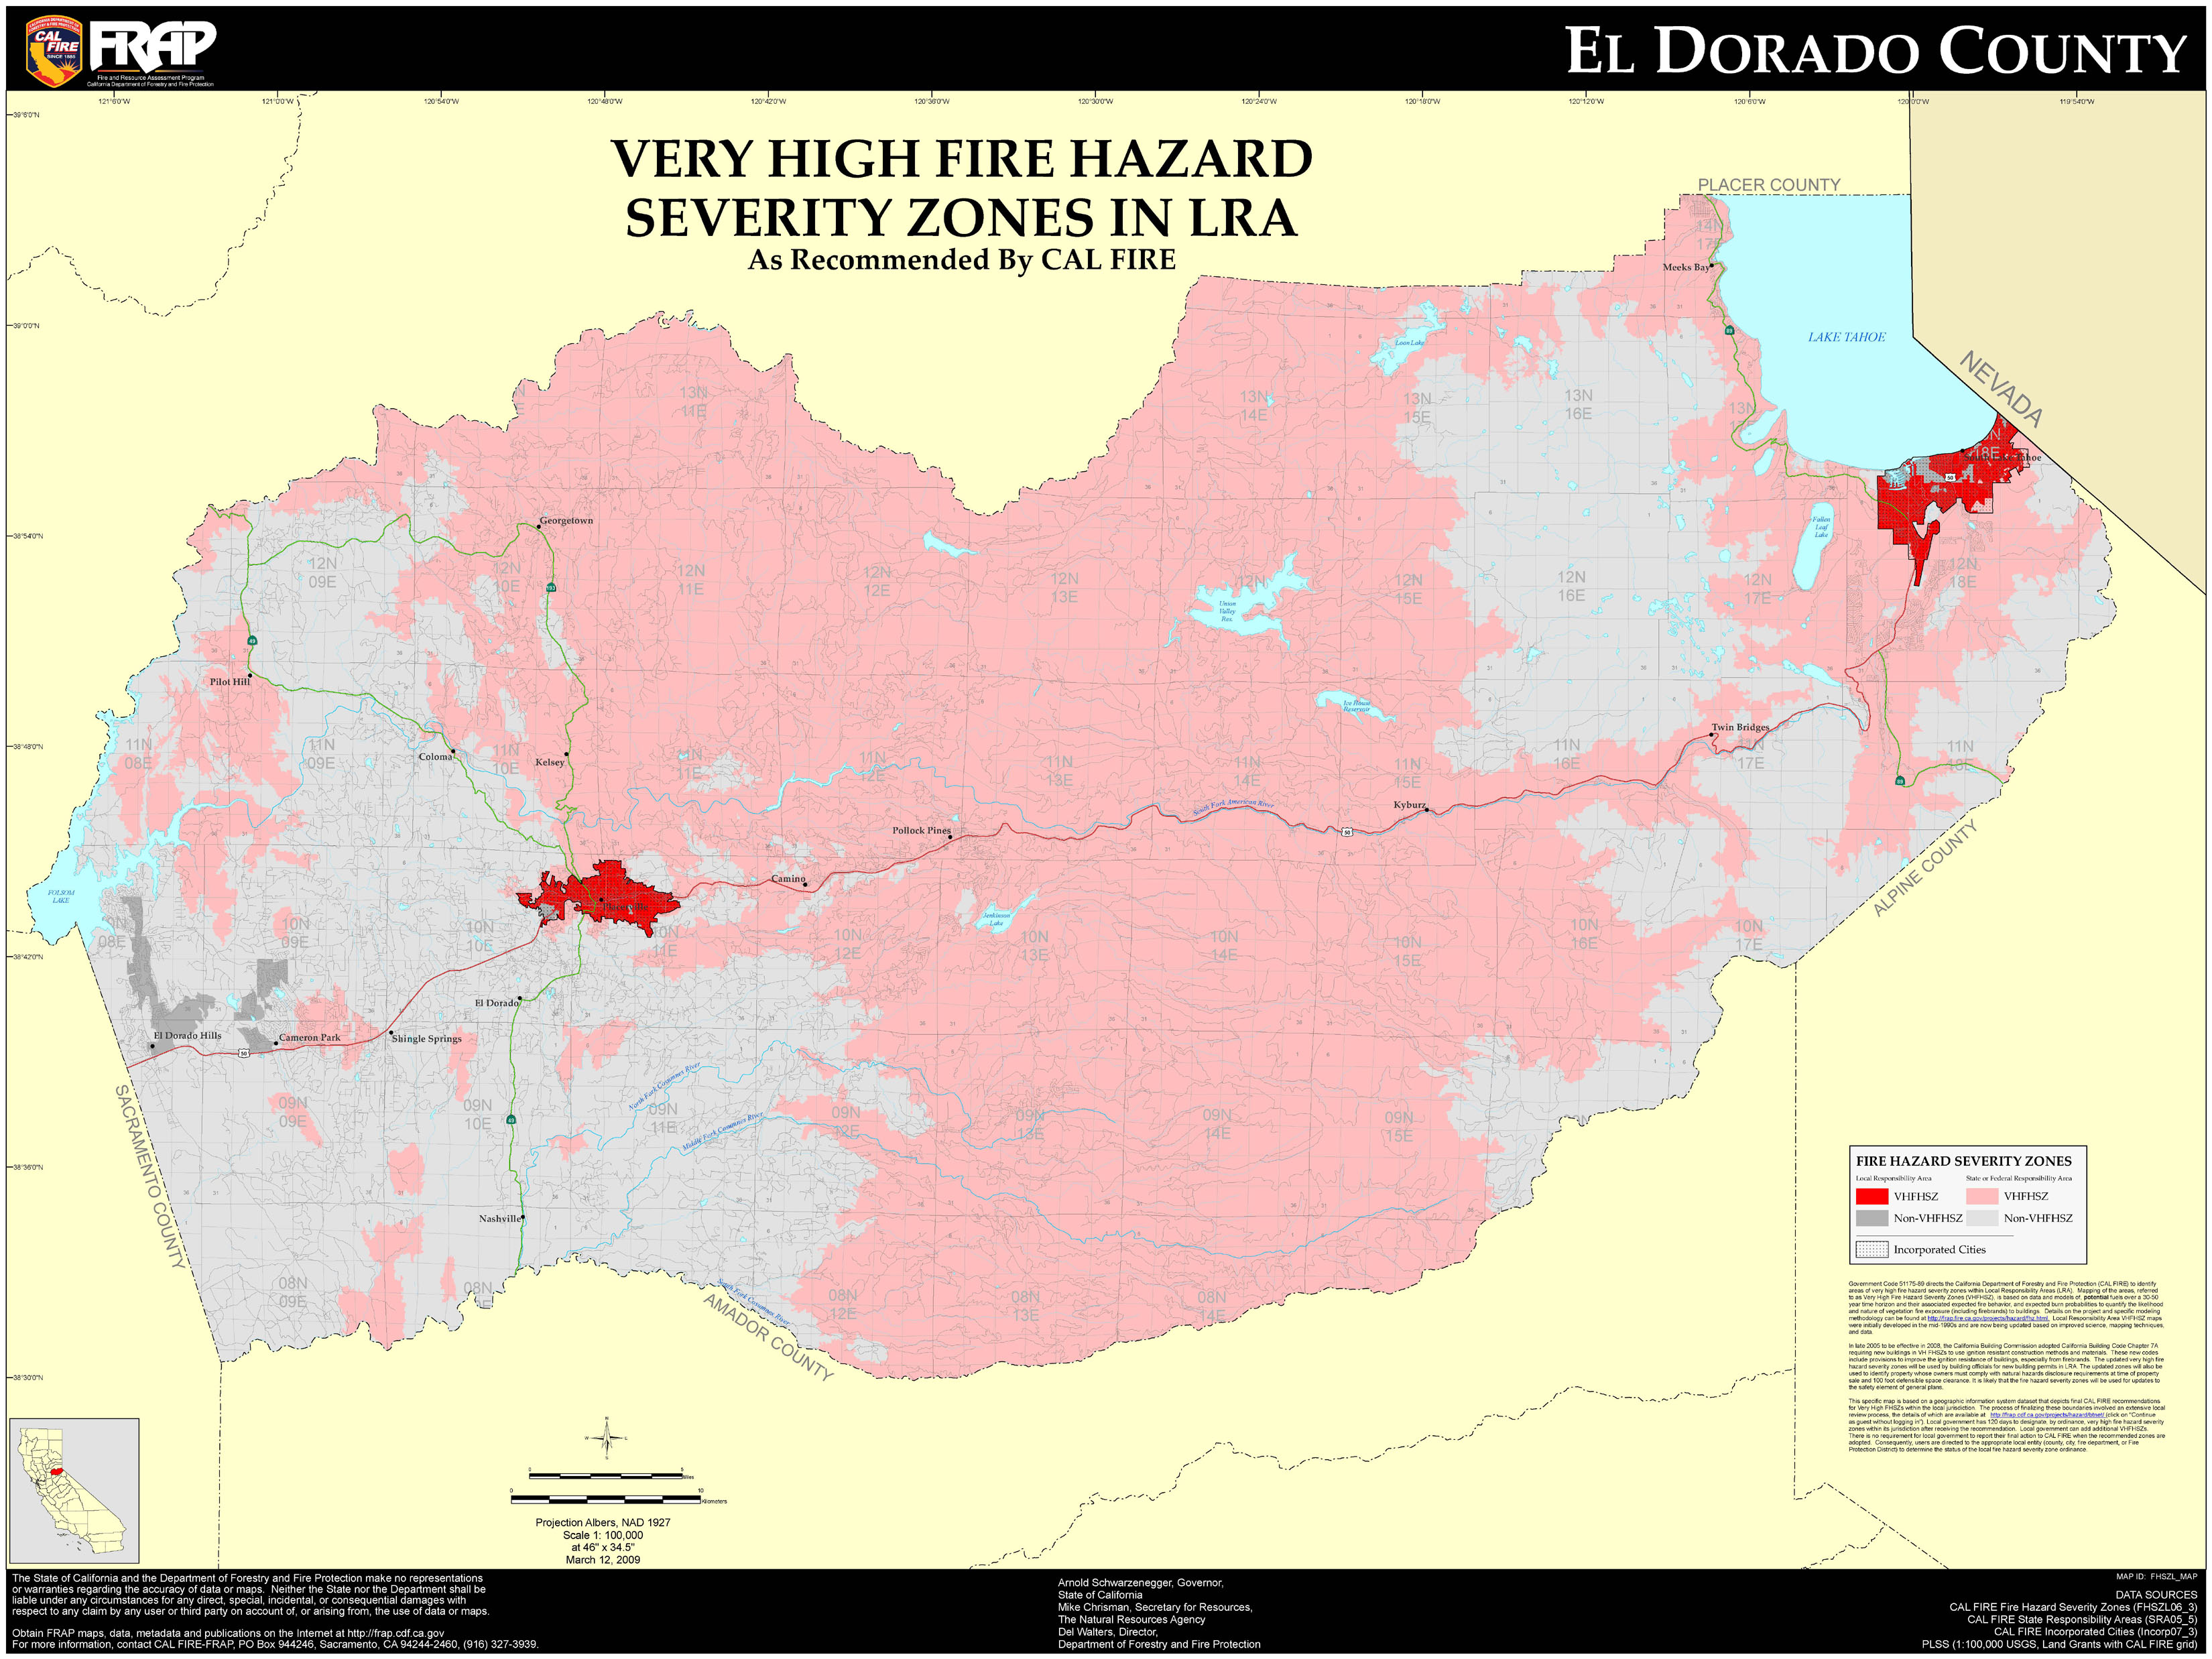 El Dorado County El Dorado County Very High Fire Hazard Severity Zones in LRA